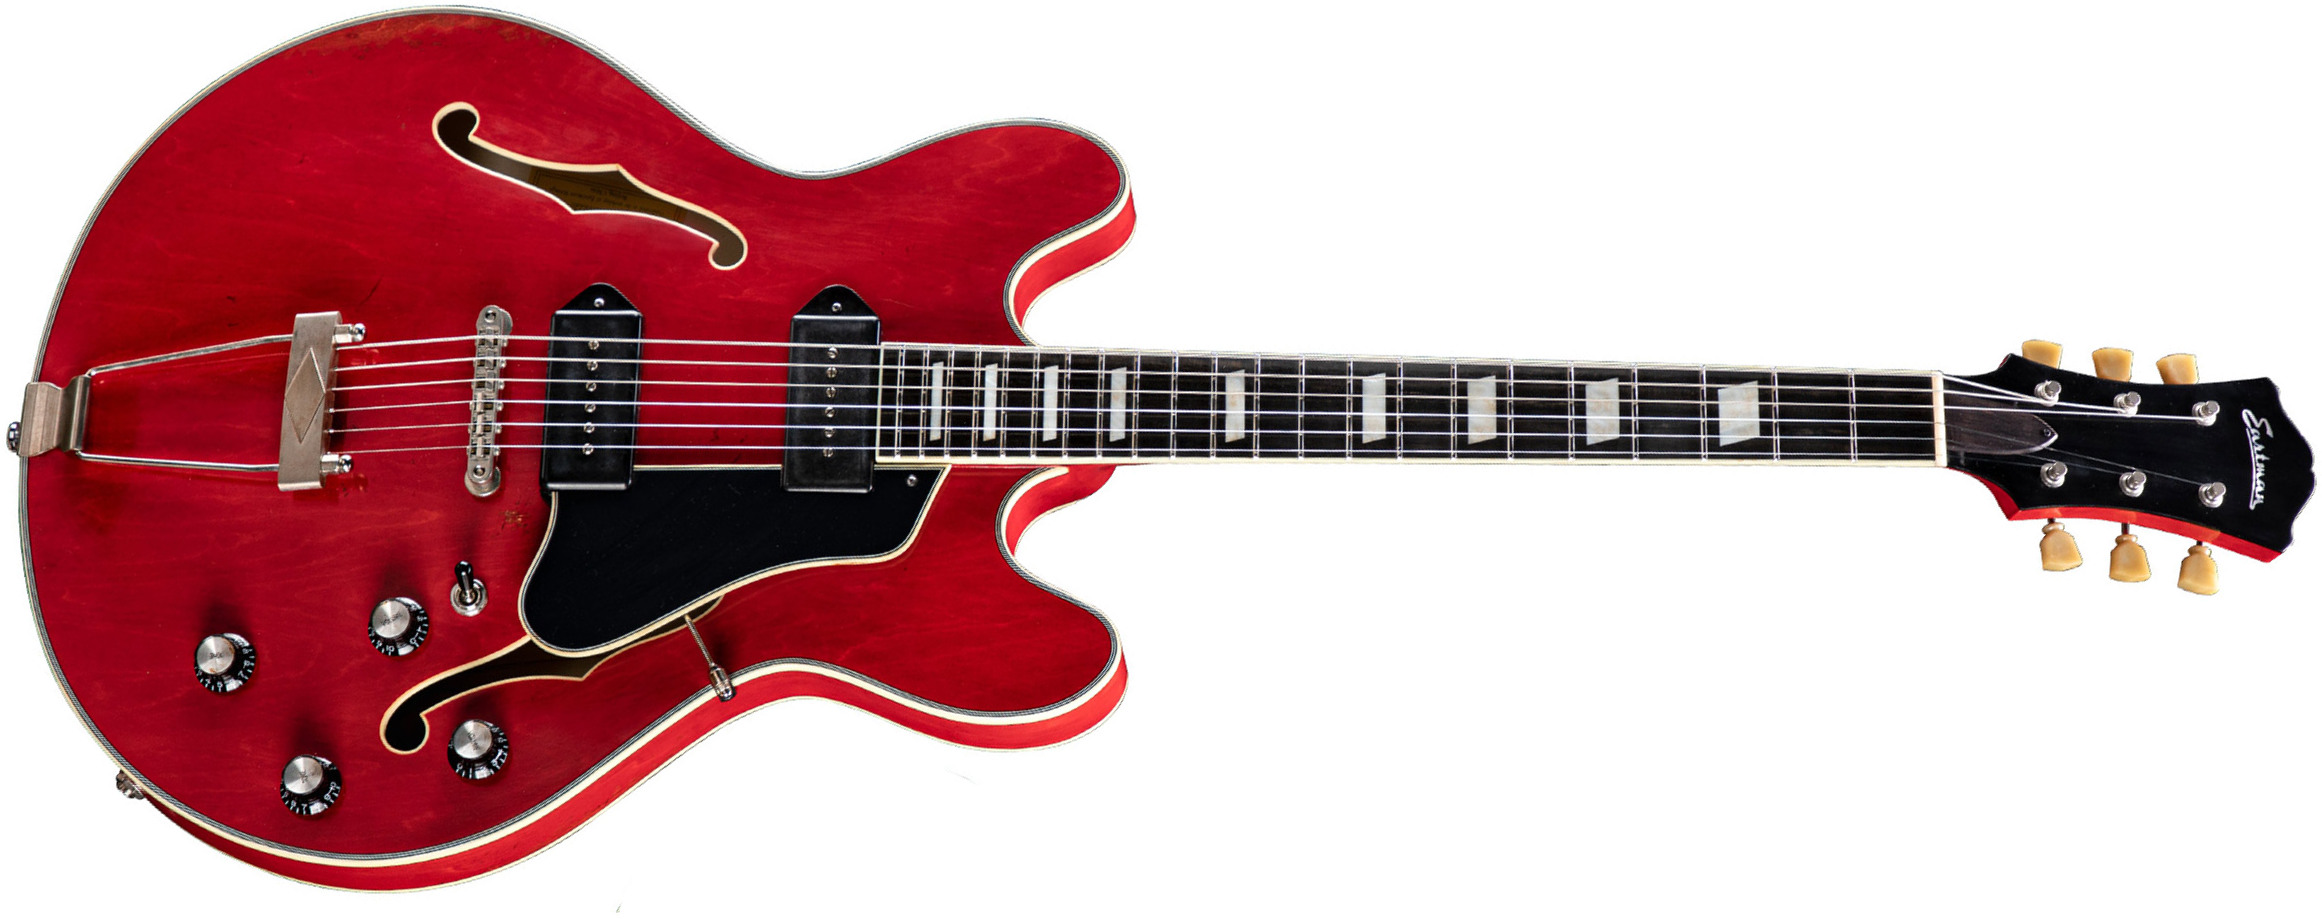 Eastman T64/v Thinline Laminate Tout Erable 2p90 Lollar Ht Eb - Antique Red - Semi hollow elektriche gitaar - Main picture